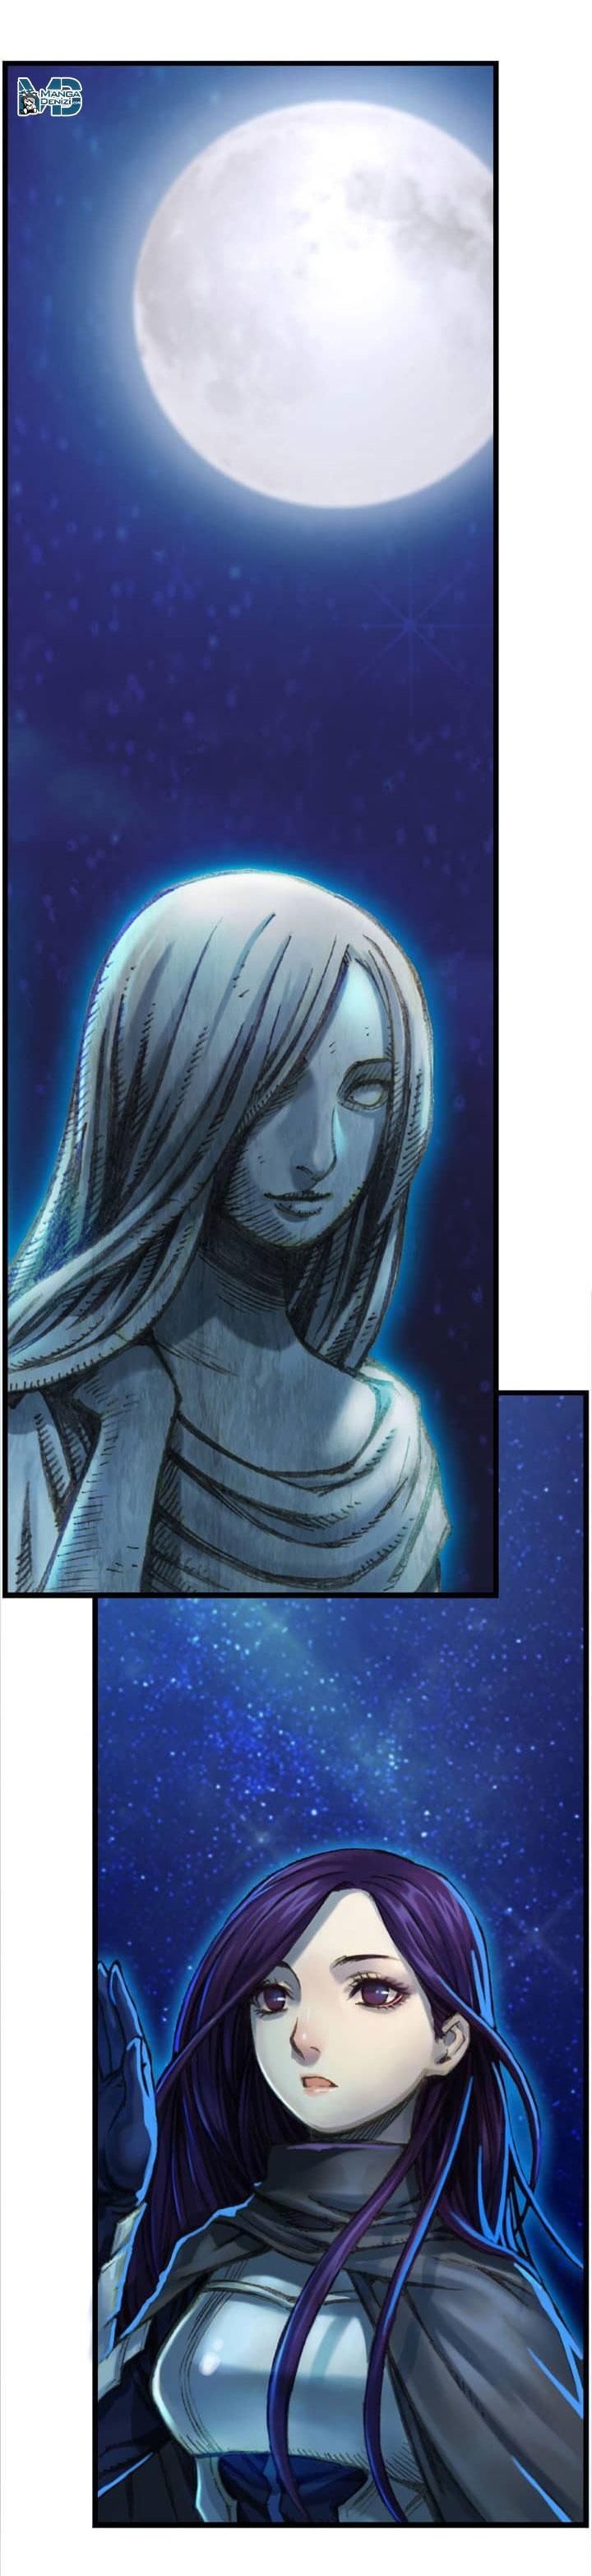 The Legendary Moonlight Sculptor mangasının 037 bölümünün 4. sayfasını okuyorsunuz.